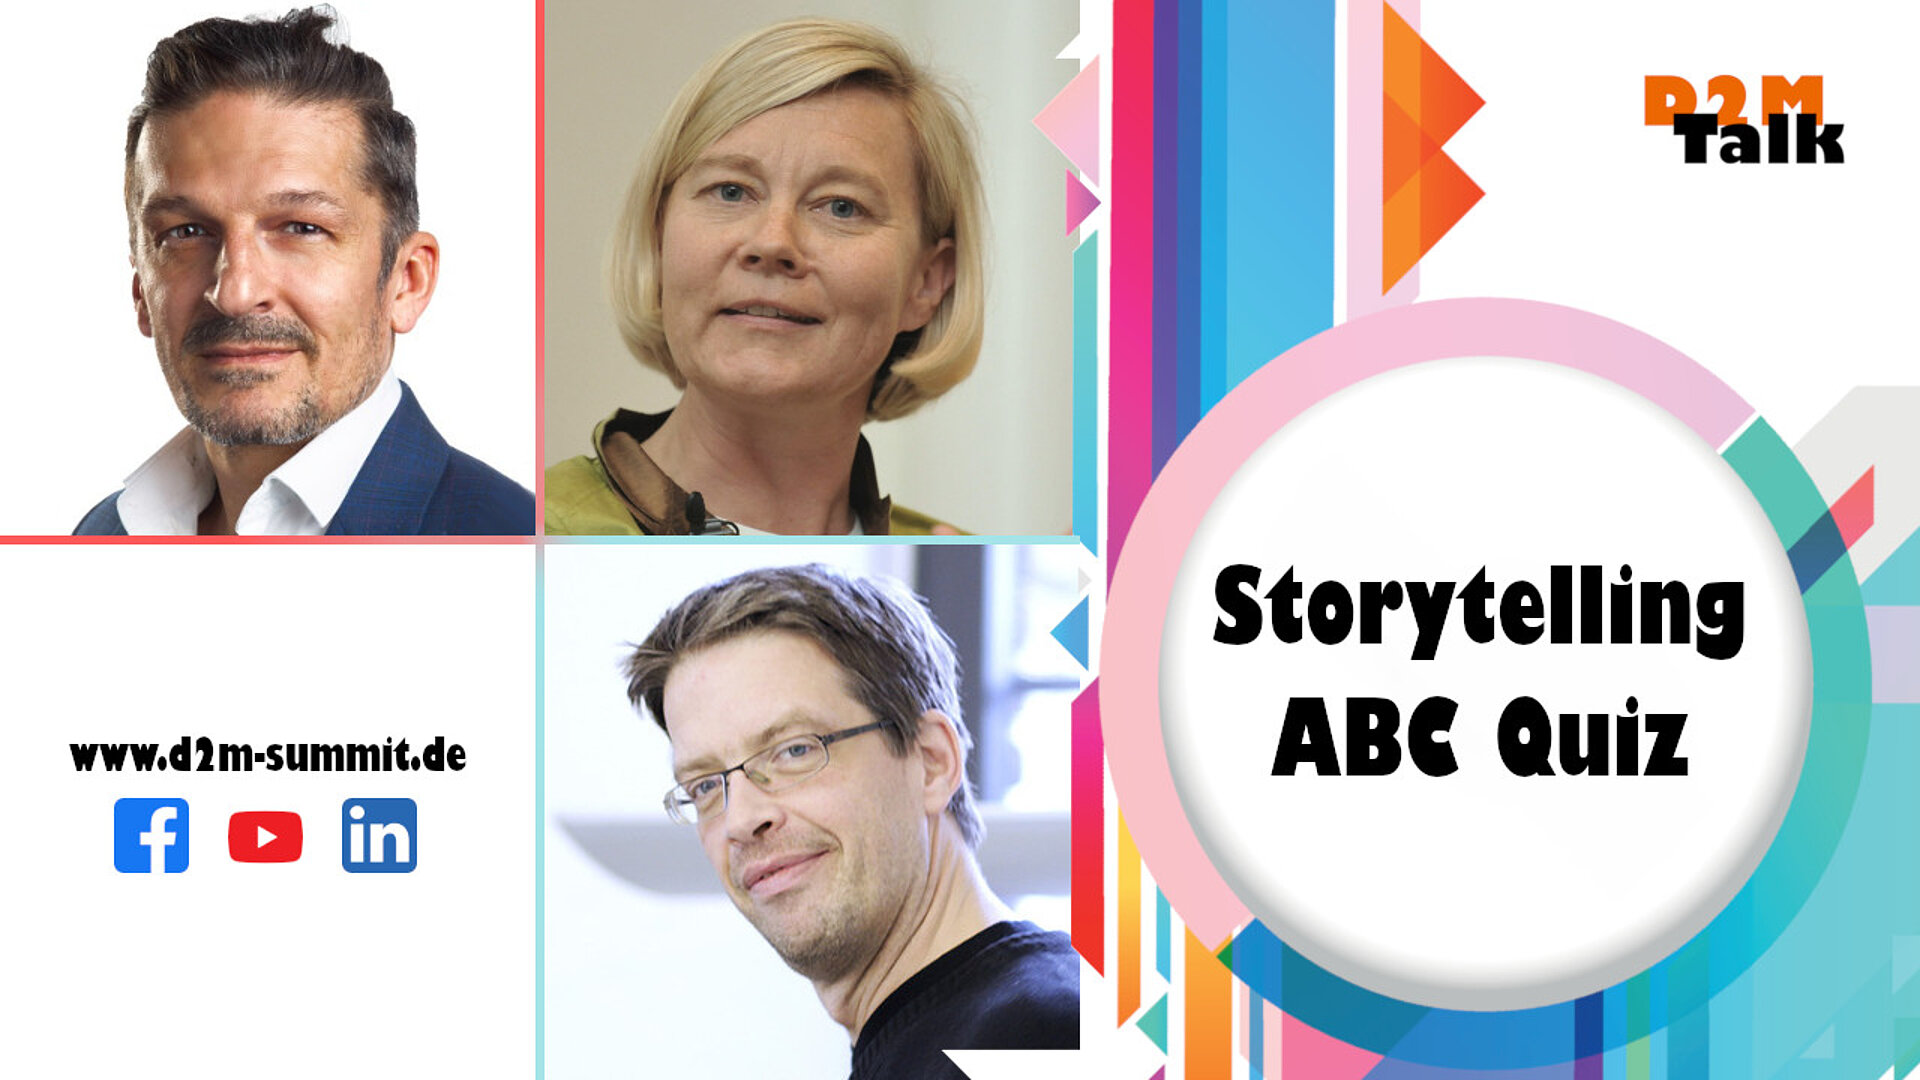 Storytelling ABC Quiz mit Carsten Rossi, Petra Sammer & Patrick Kappeler